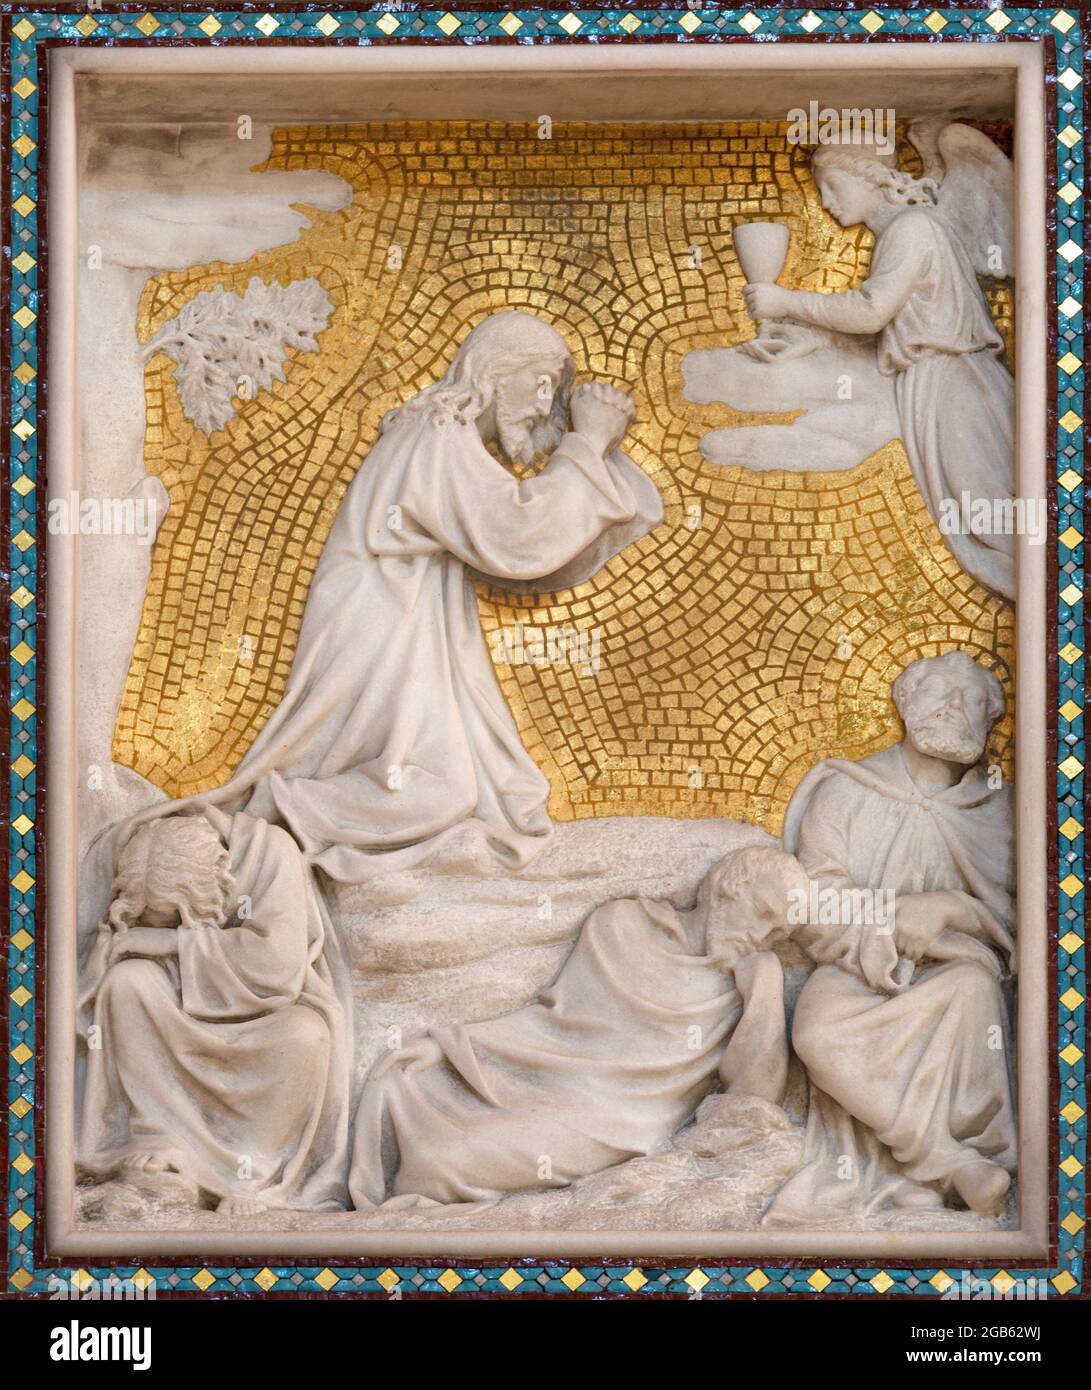 VIENNA, AUSTIRA - JUNI 24, 2021: Il sollievo della preghiera di Gesù nel giardino del Getsemani sul sidaltar della cattedrale di Votivkirche dal 19. Foto Stock